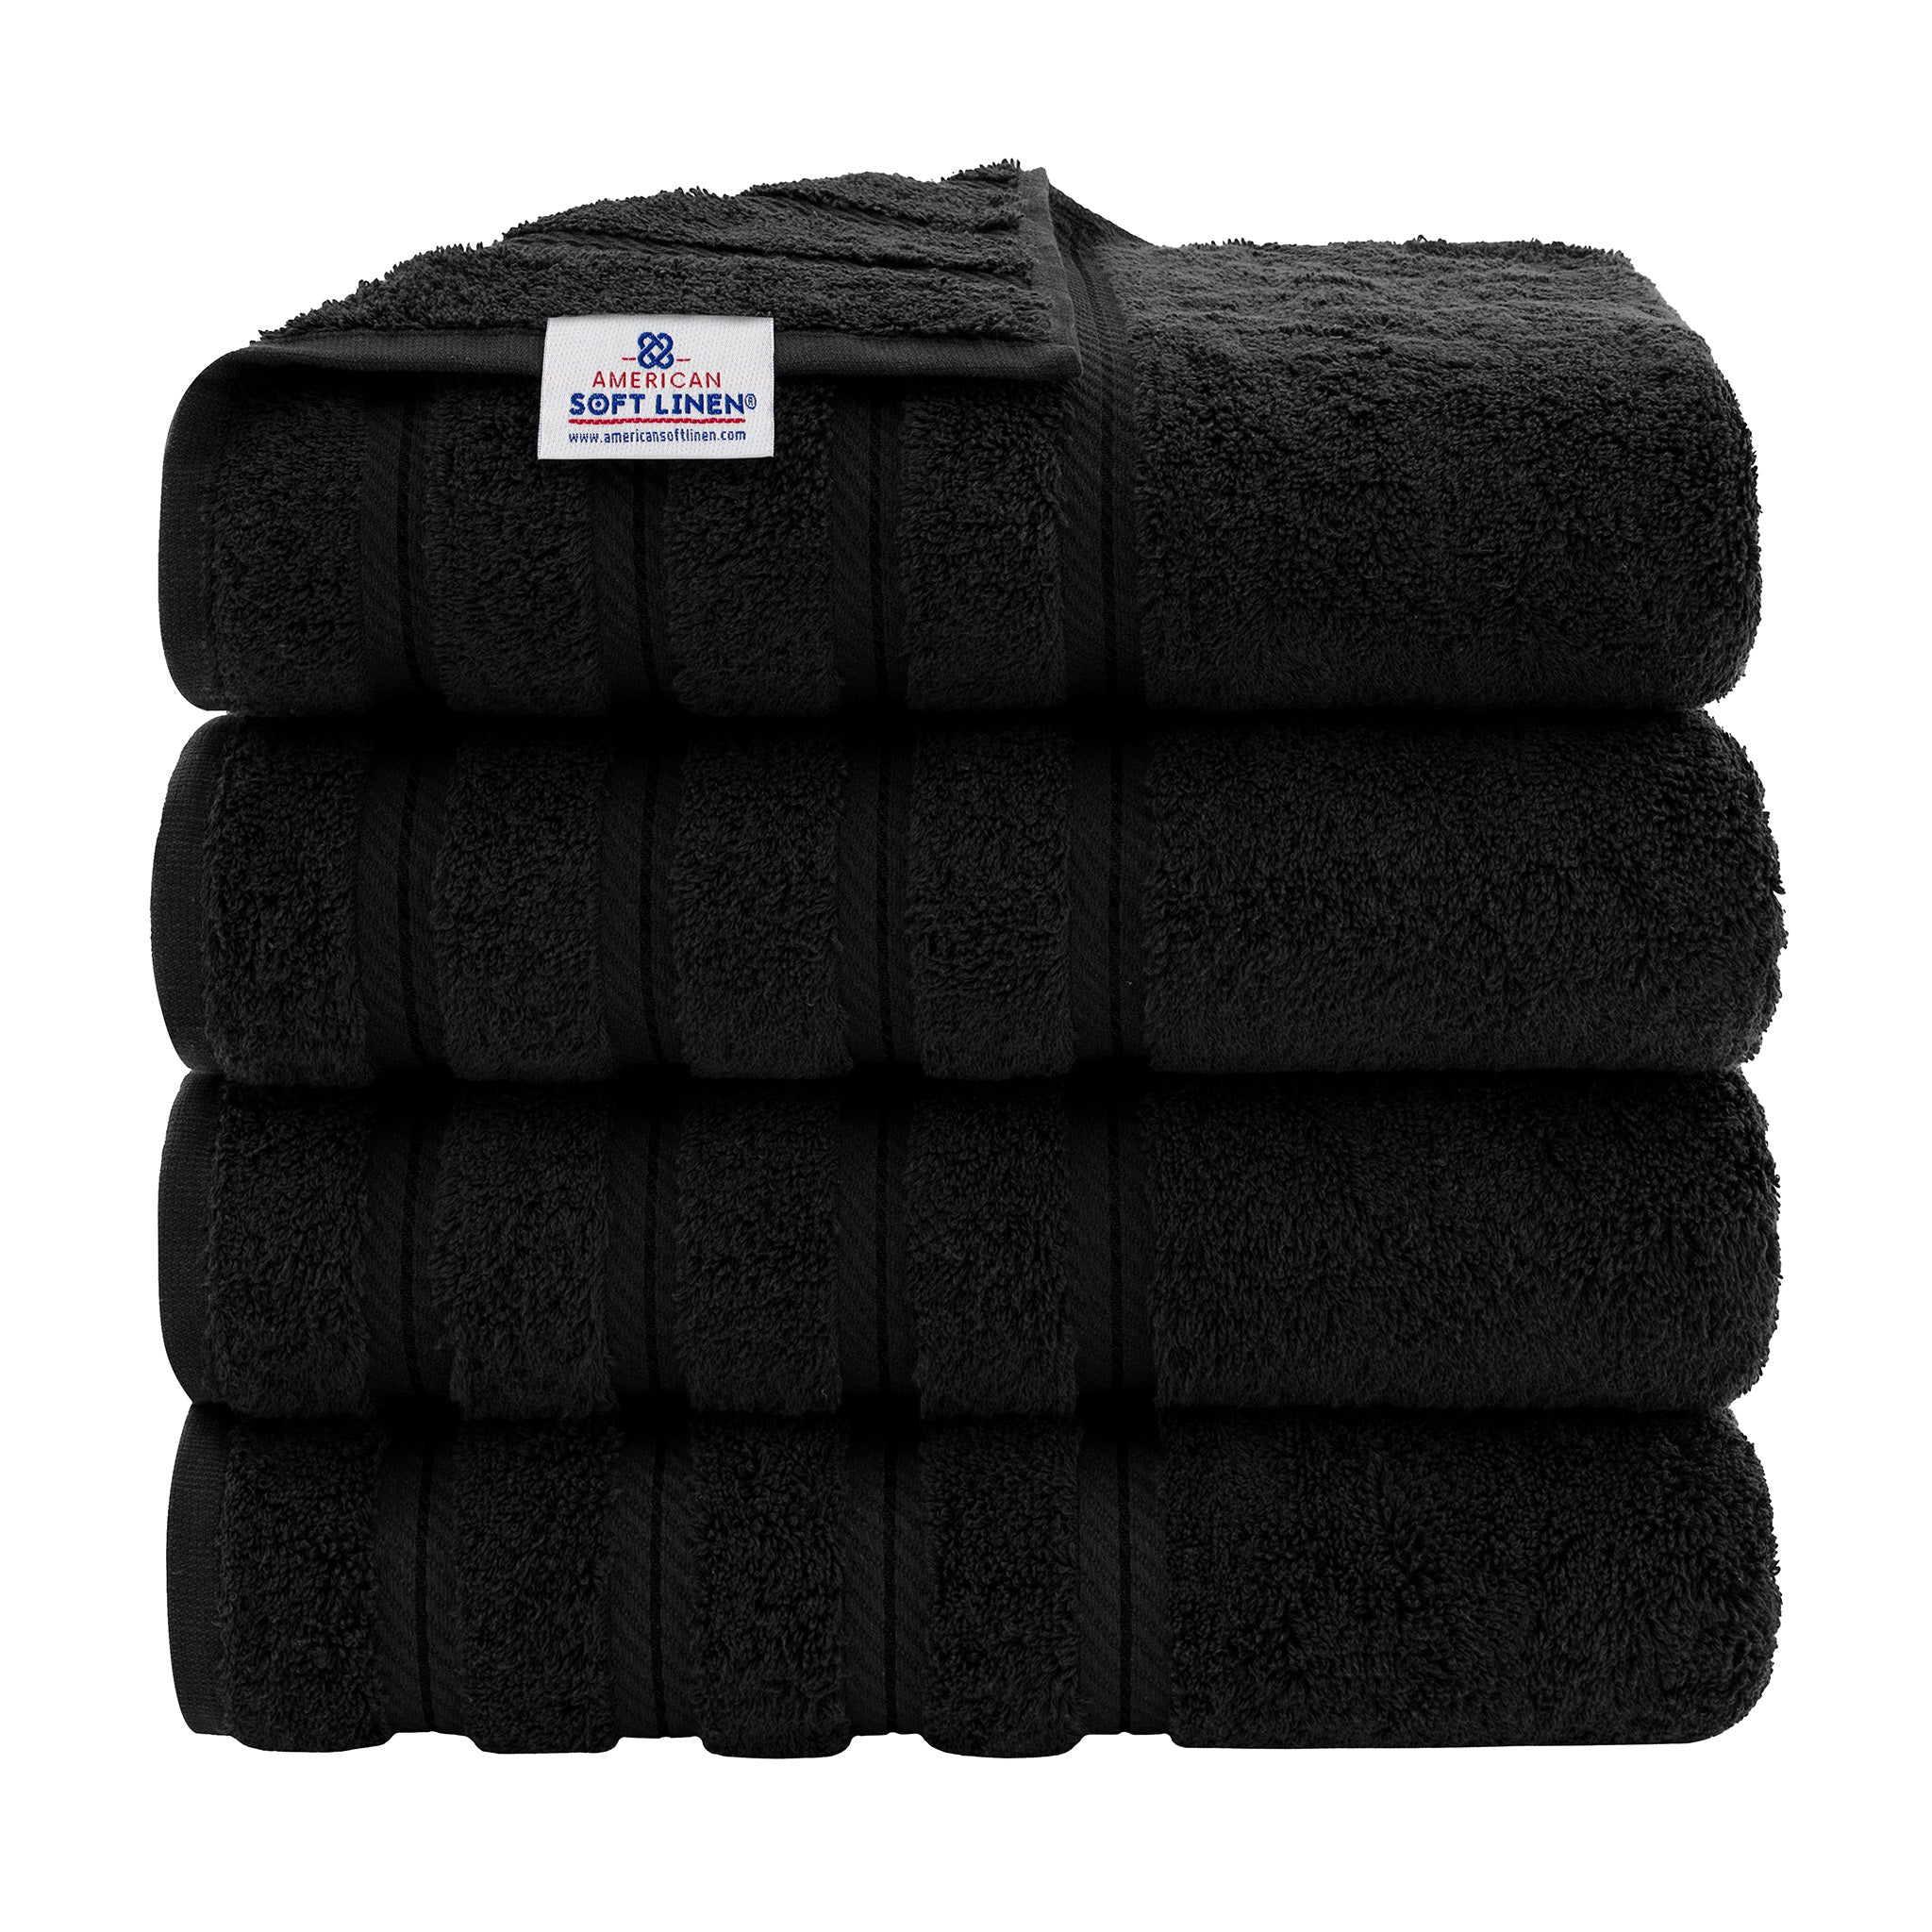 American Soft Linen 100% Turkish Cotton 4 Pack Bath Towel Set Wholesale black-1